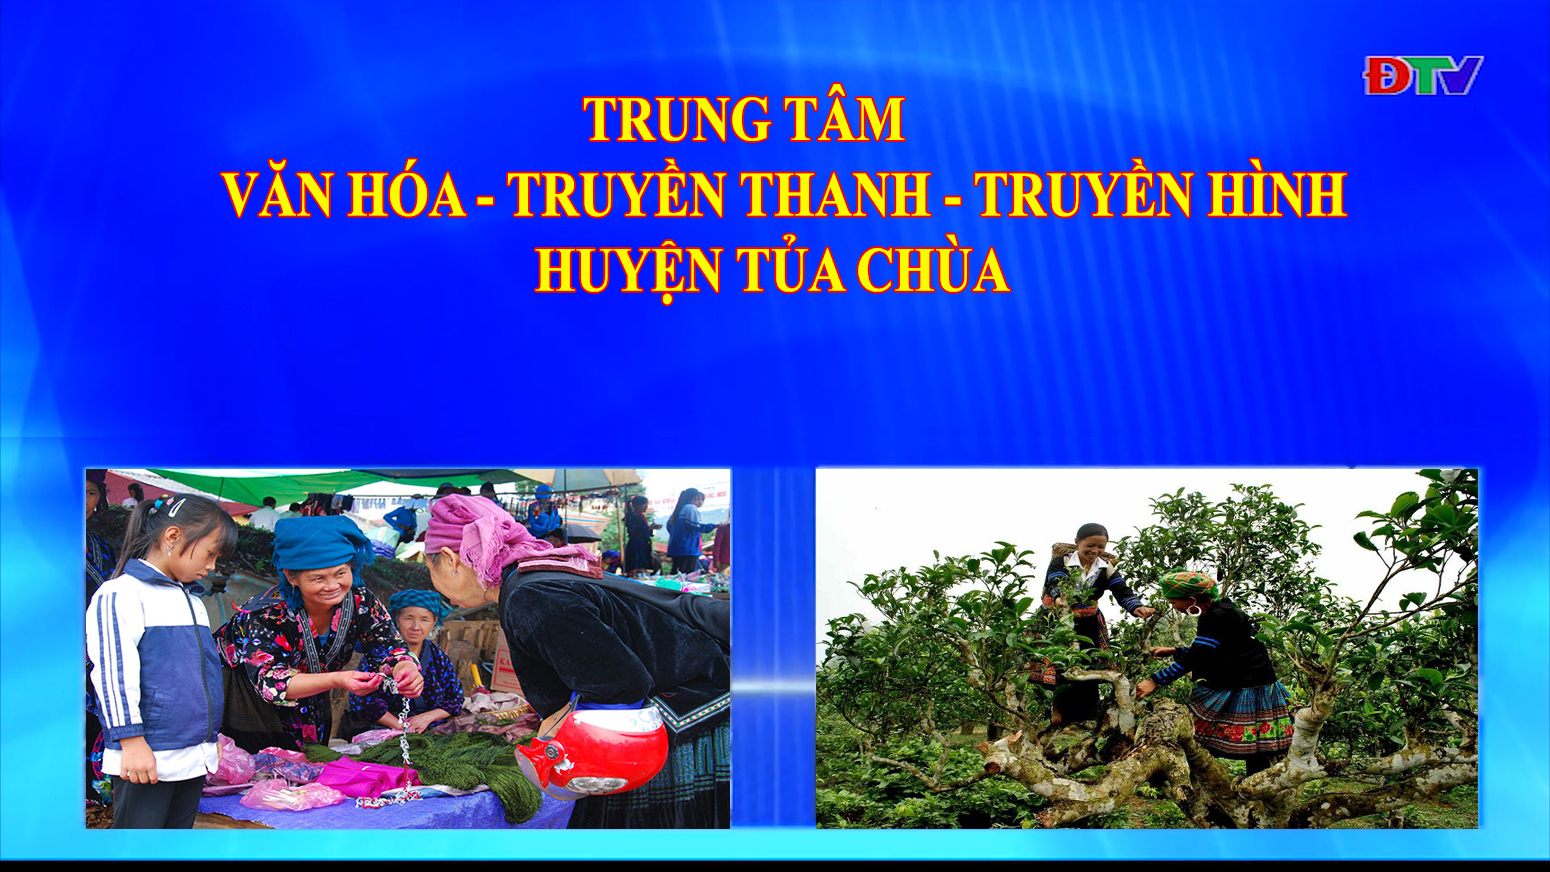 Trung tâm Văn hóa Truyền thanh Truyền hình huyện Tủa Chùa (Ngày 14-8-2020)